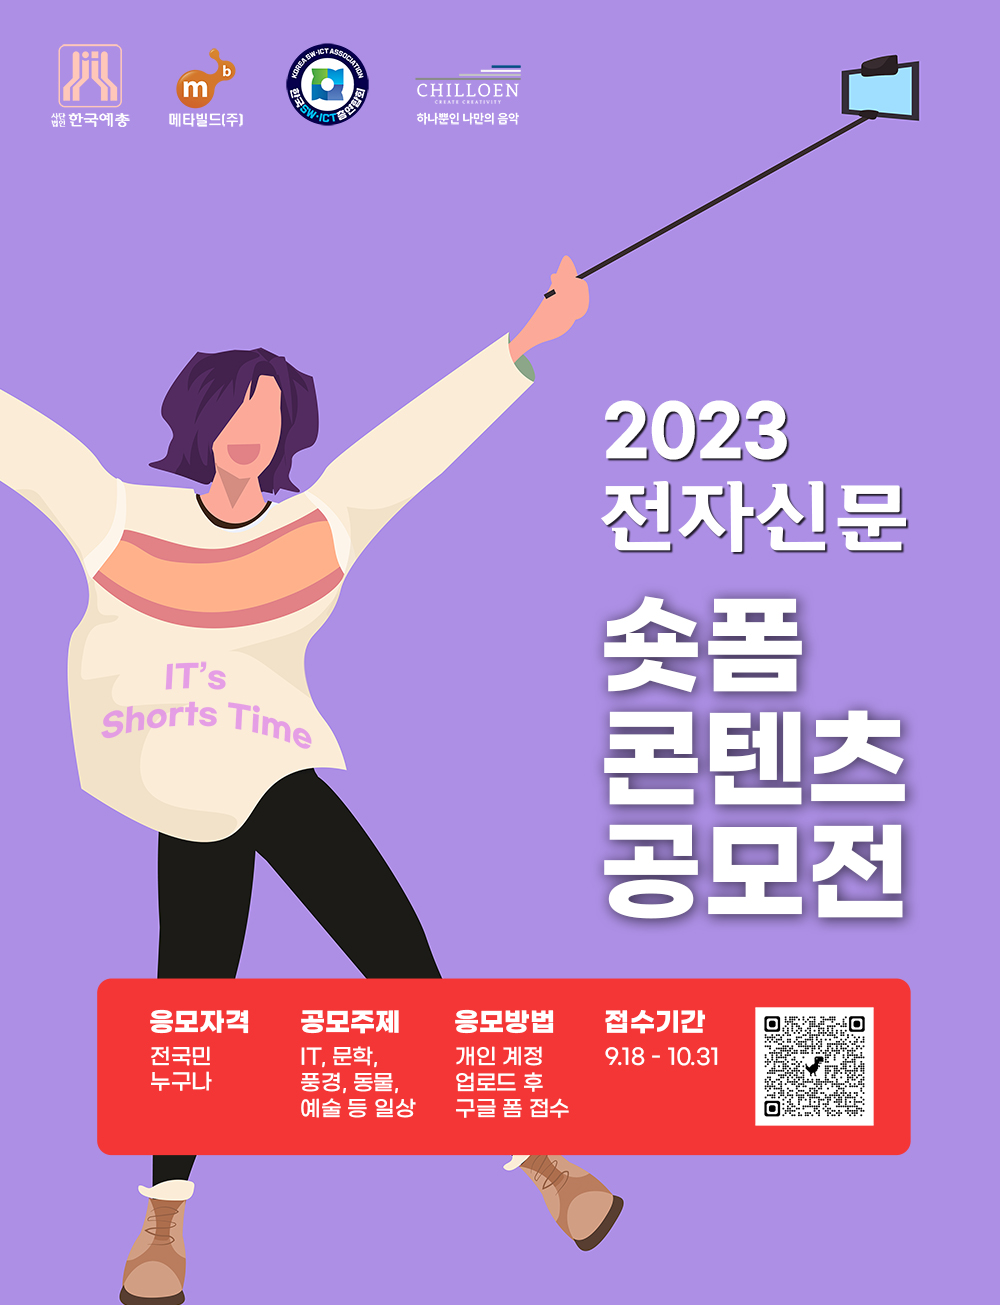 2023 전자신문 숏폼 콘텐츠 공모전 안내 포스터